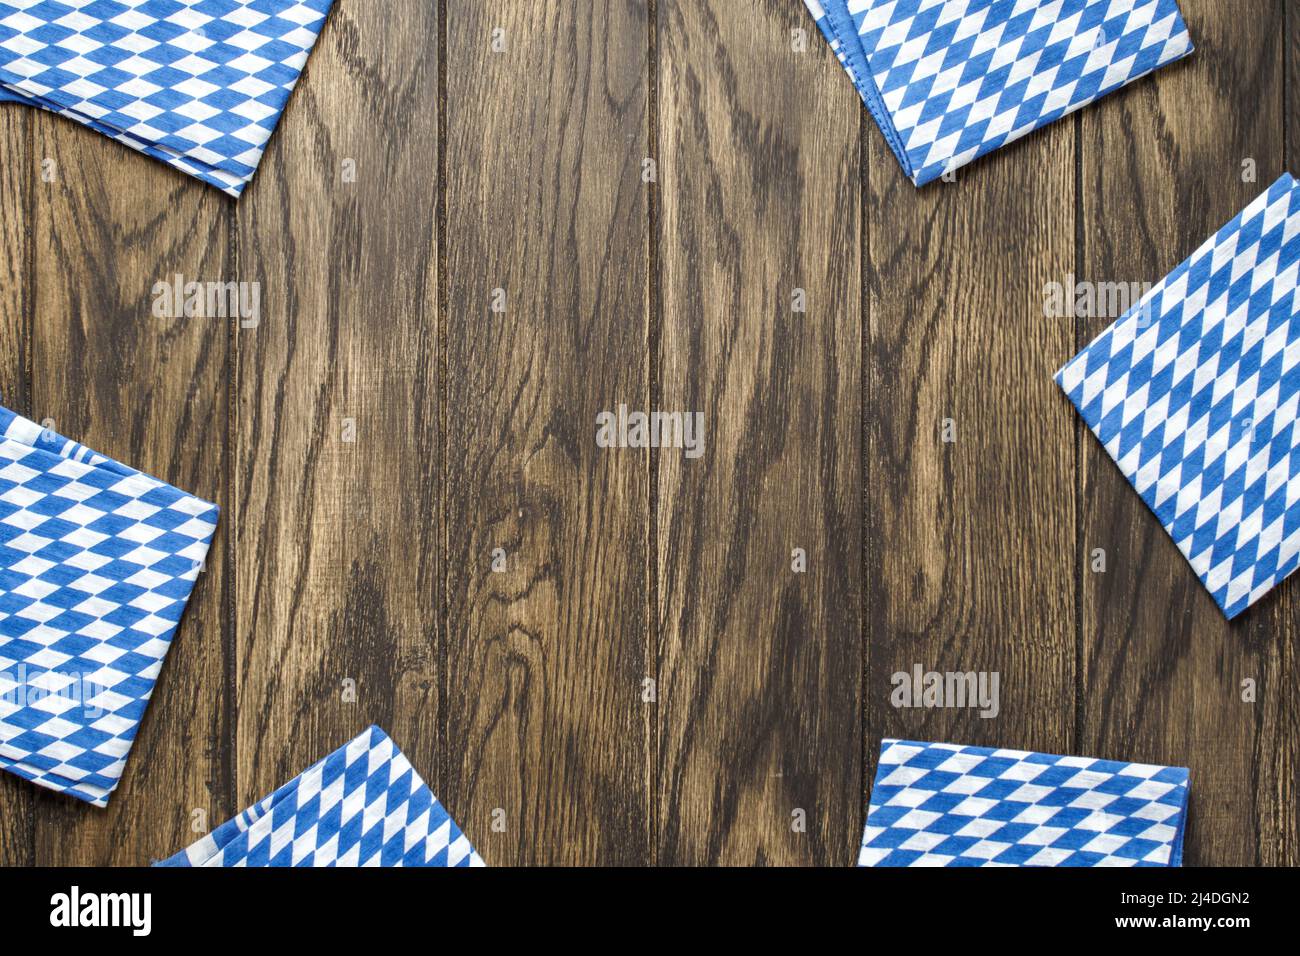 Wooden oak table background for Oktoberfest bavarian beer festival Stock Photo